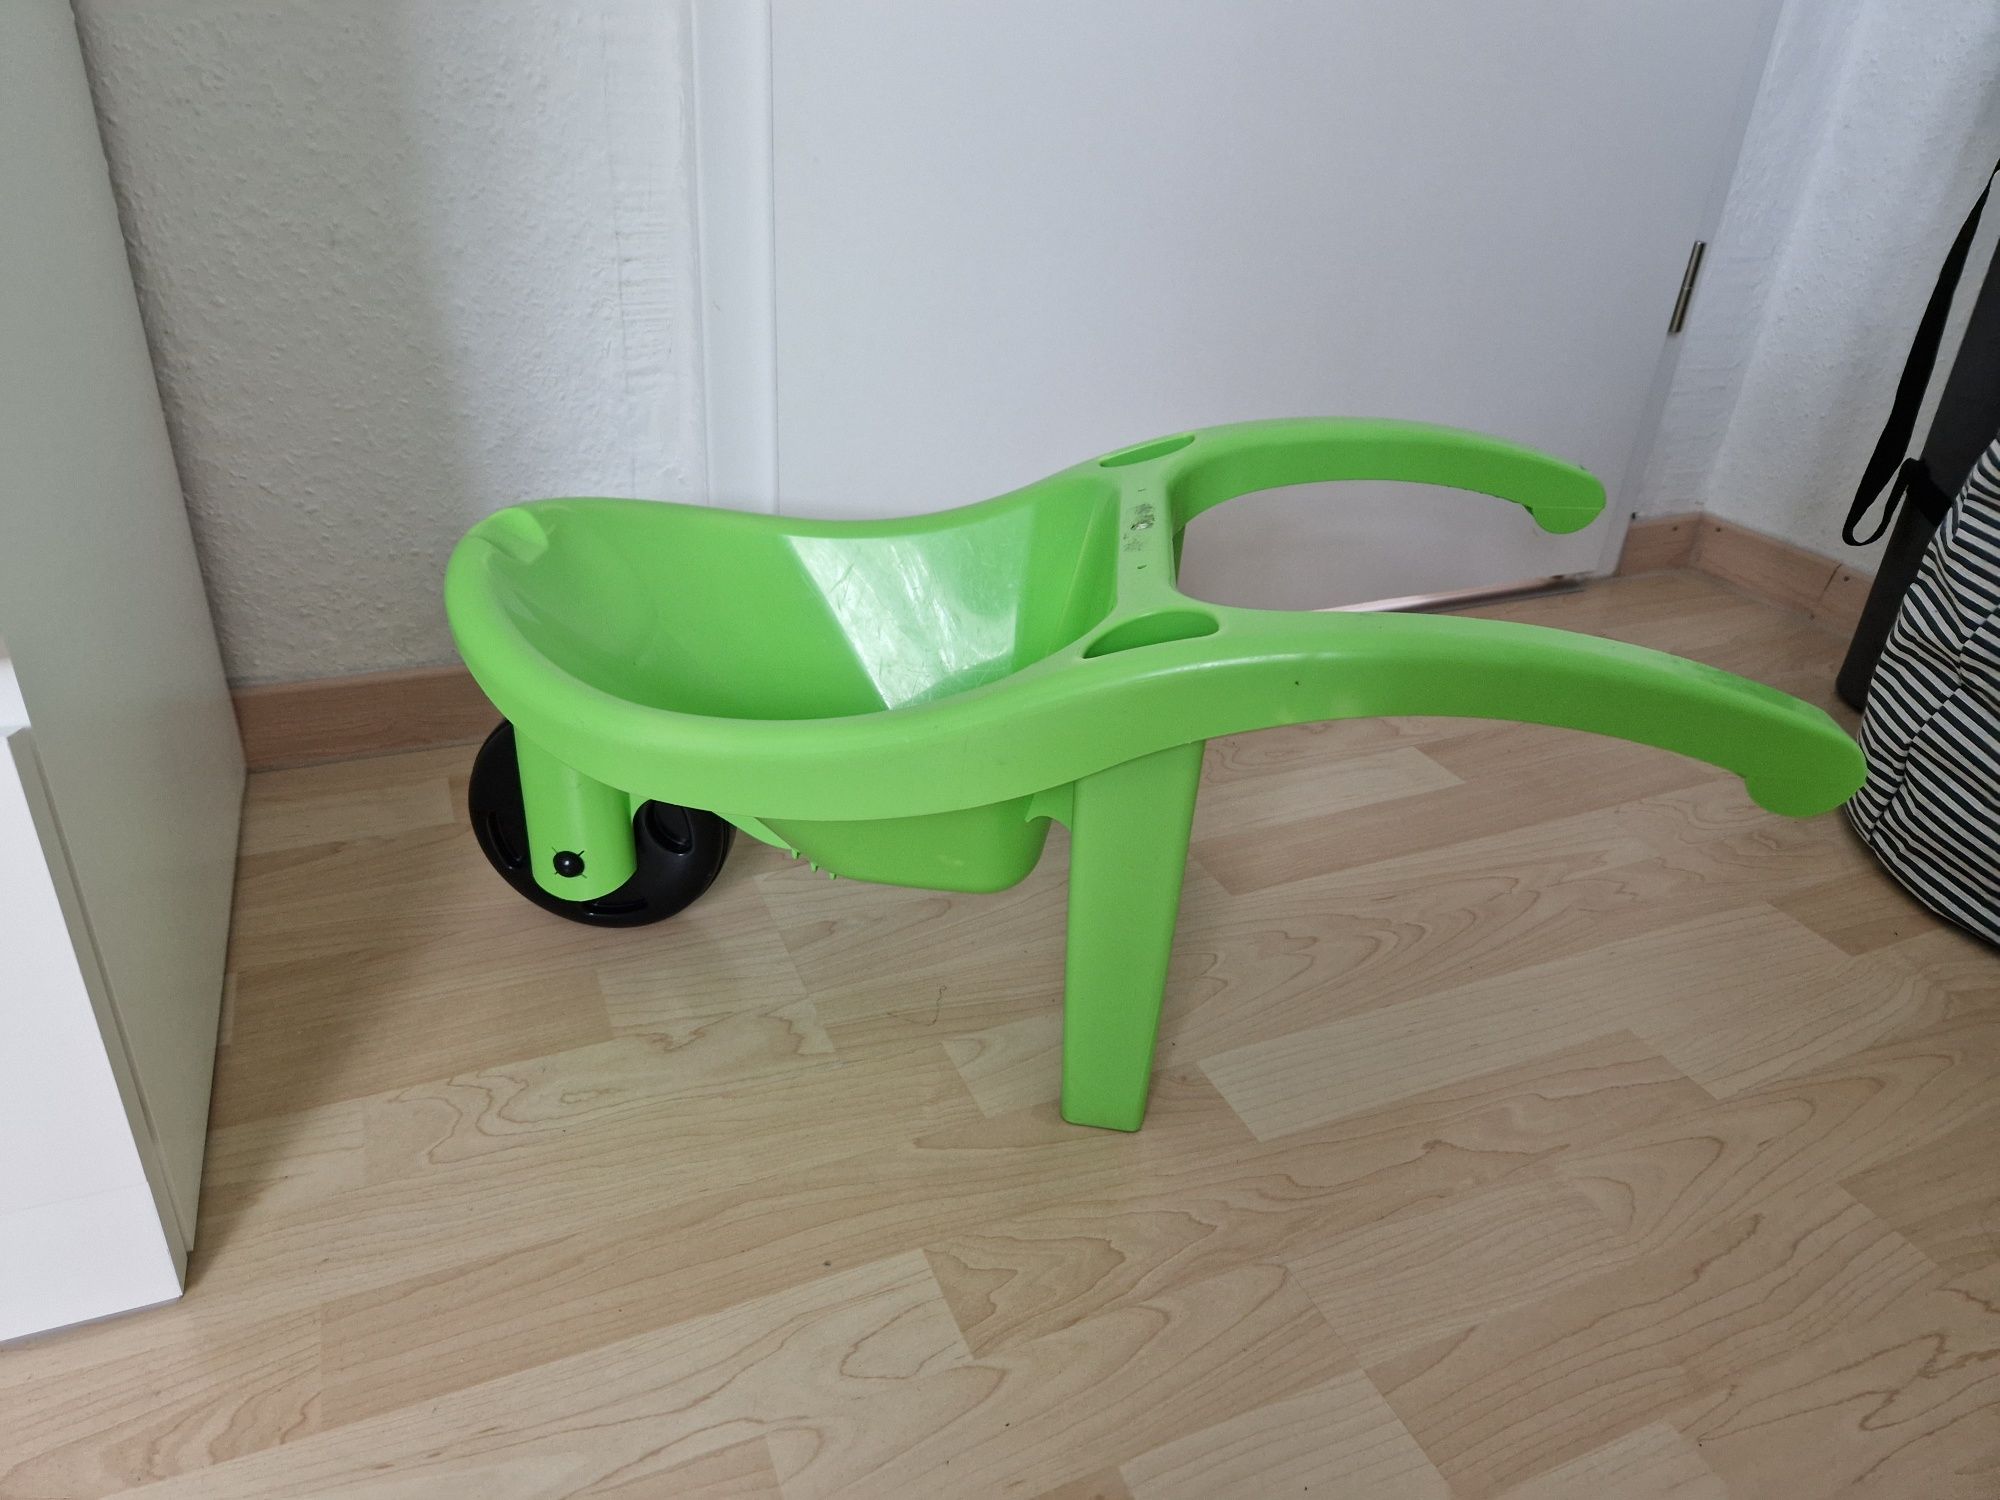 Taczka zielona plastikowa zabawka dla dzieci